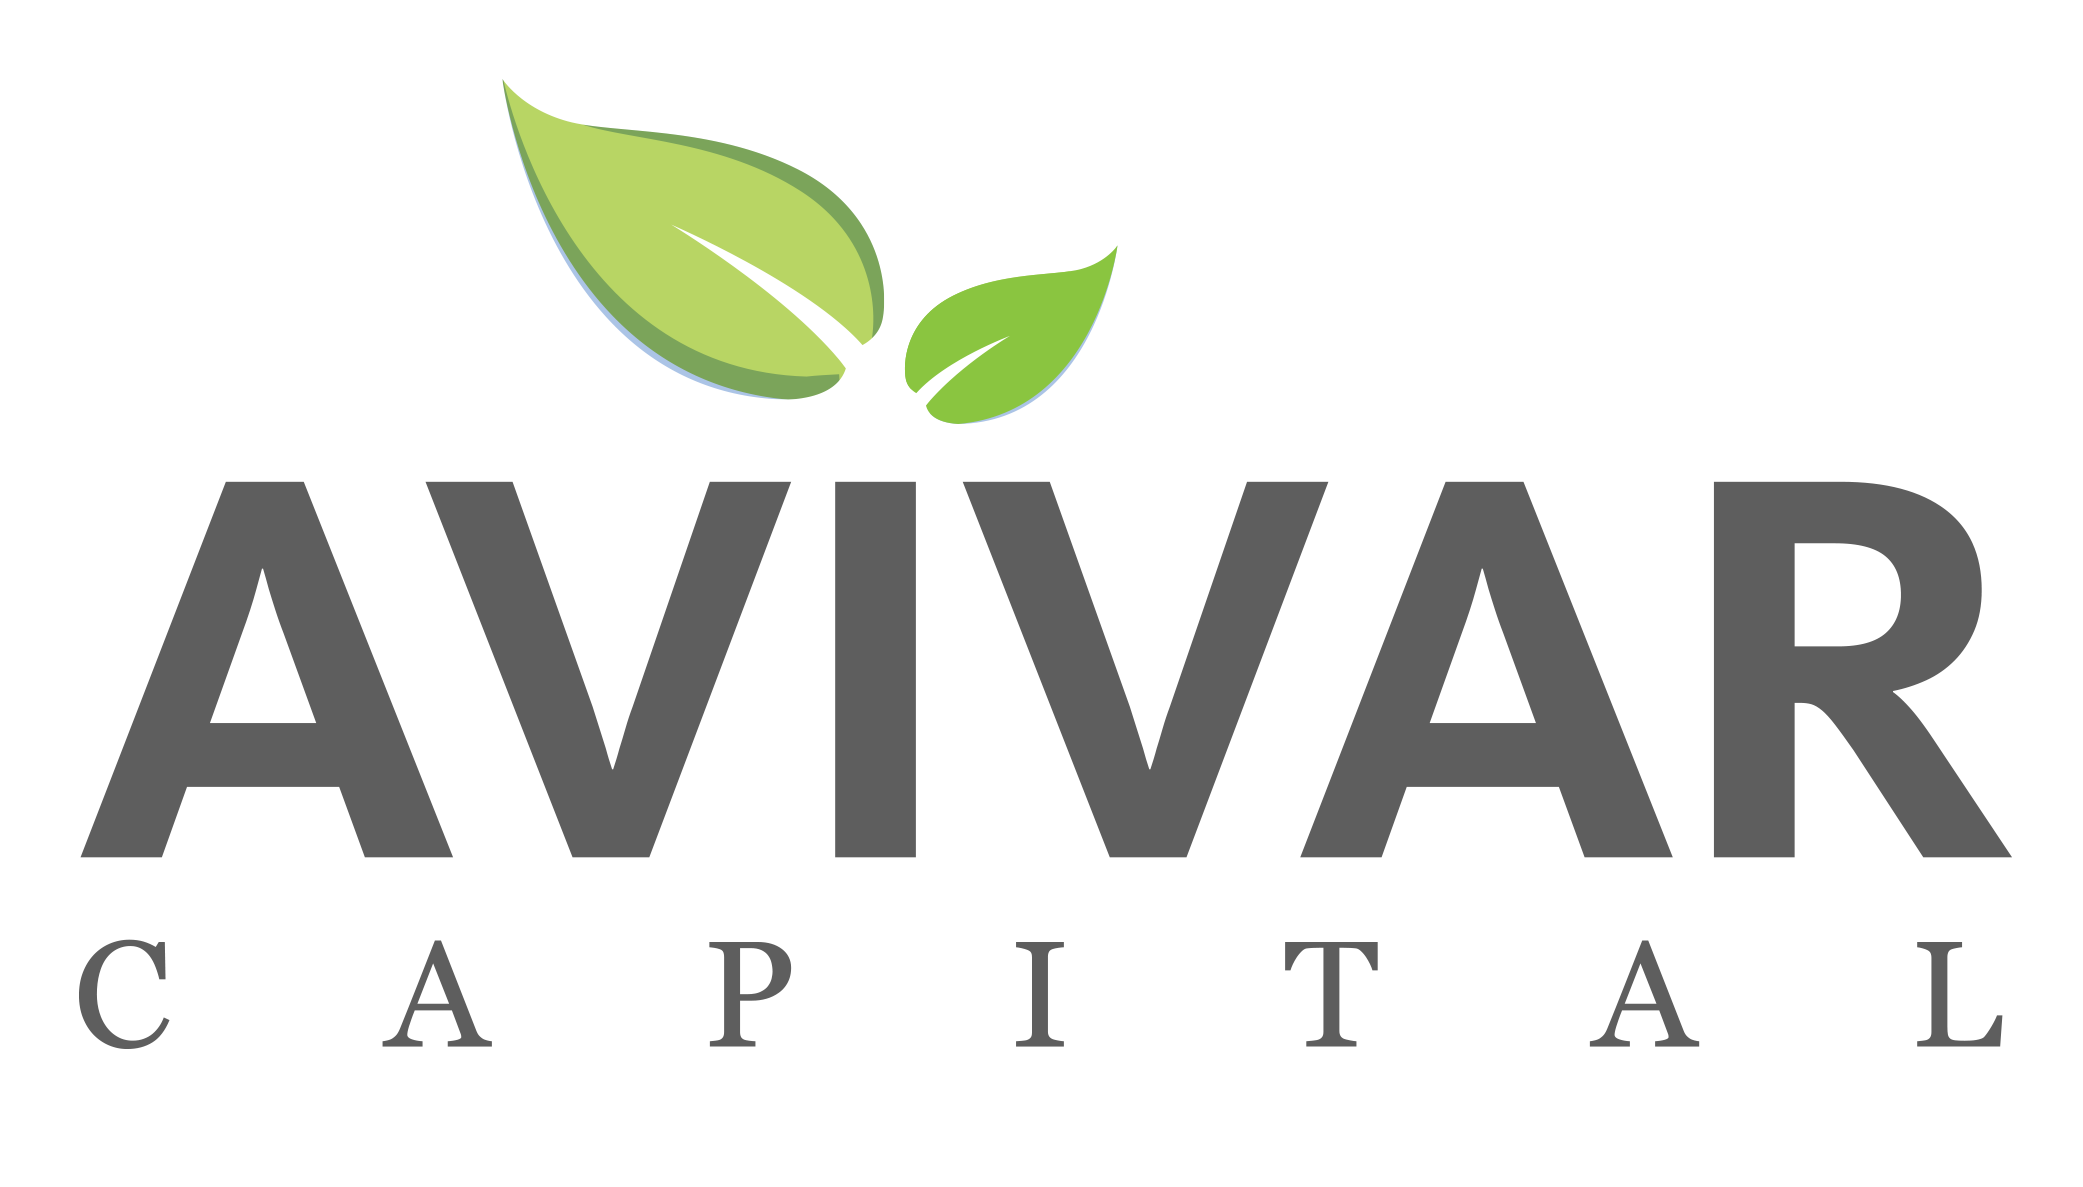 Avivar Capital